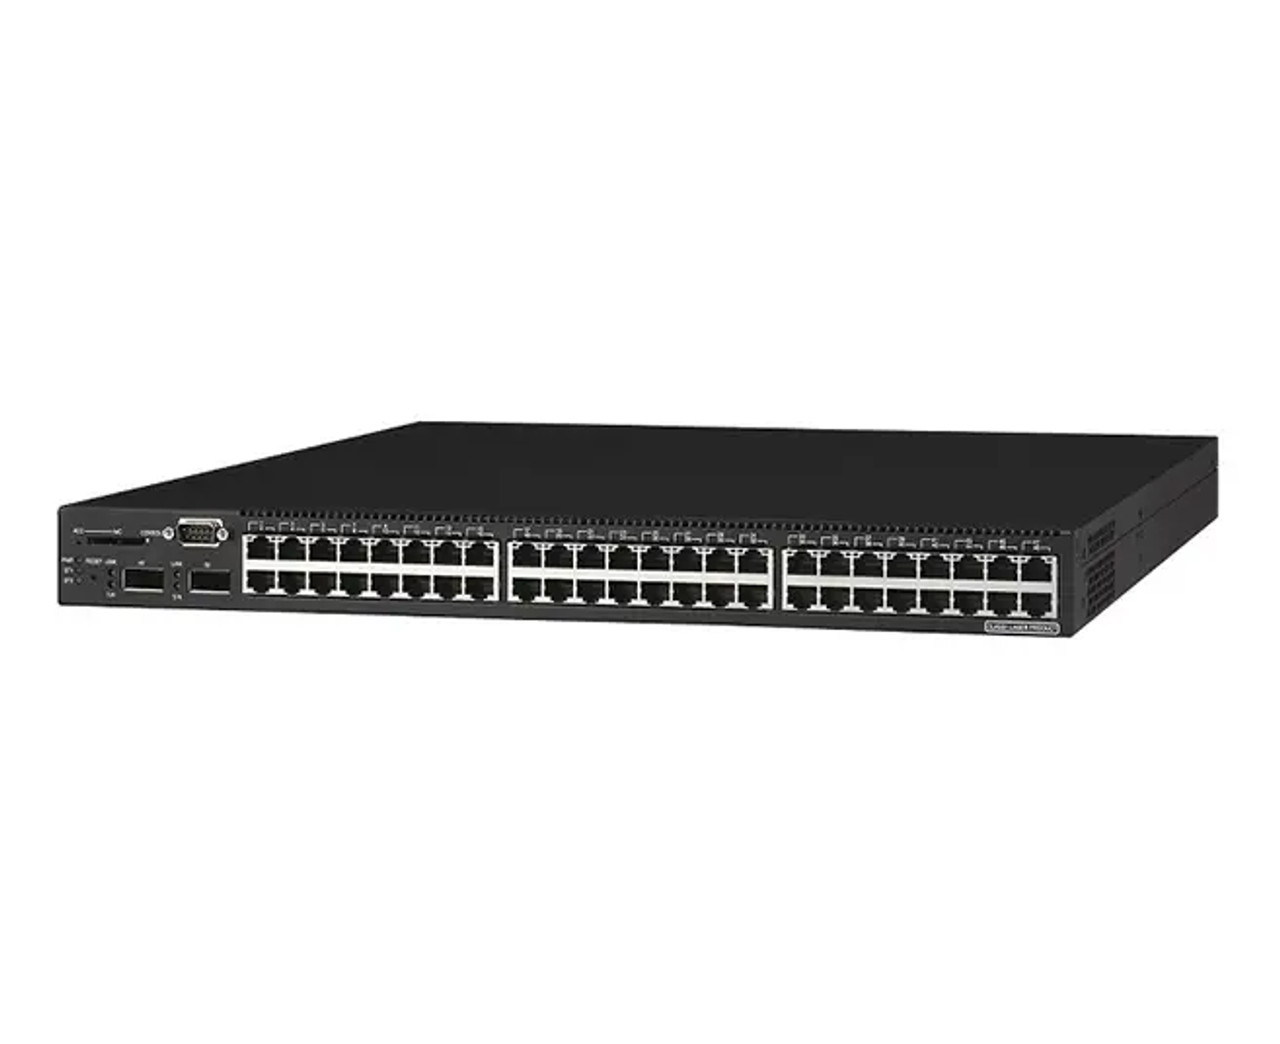 WS-C3750G-16TD-E | Cisco | Catalyst 3750G Network Switch